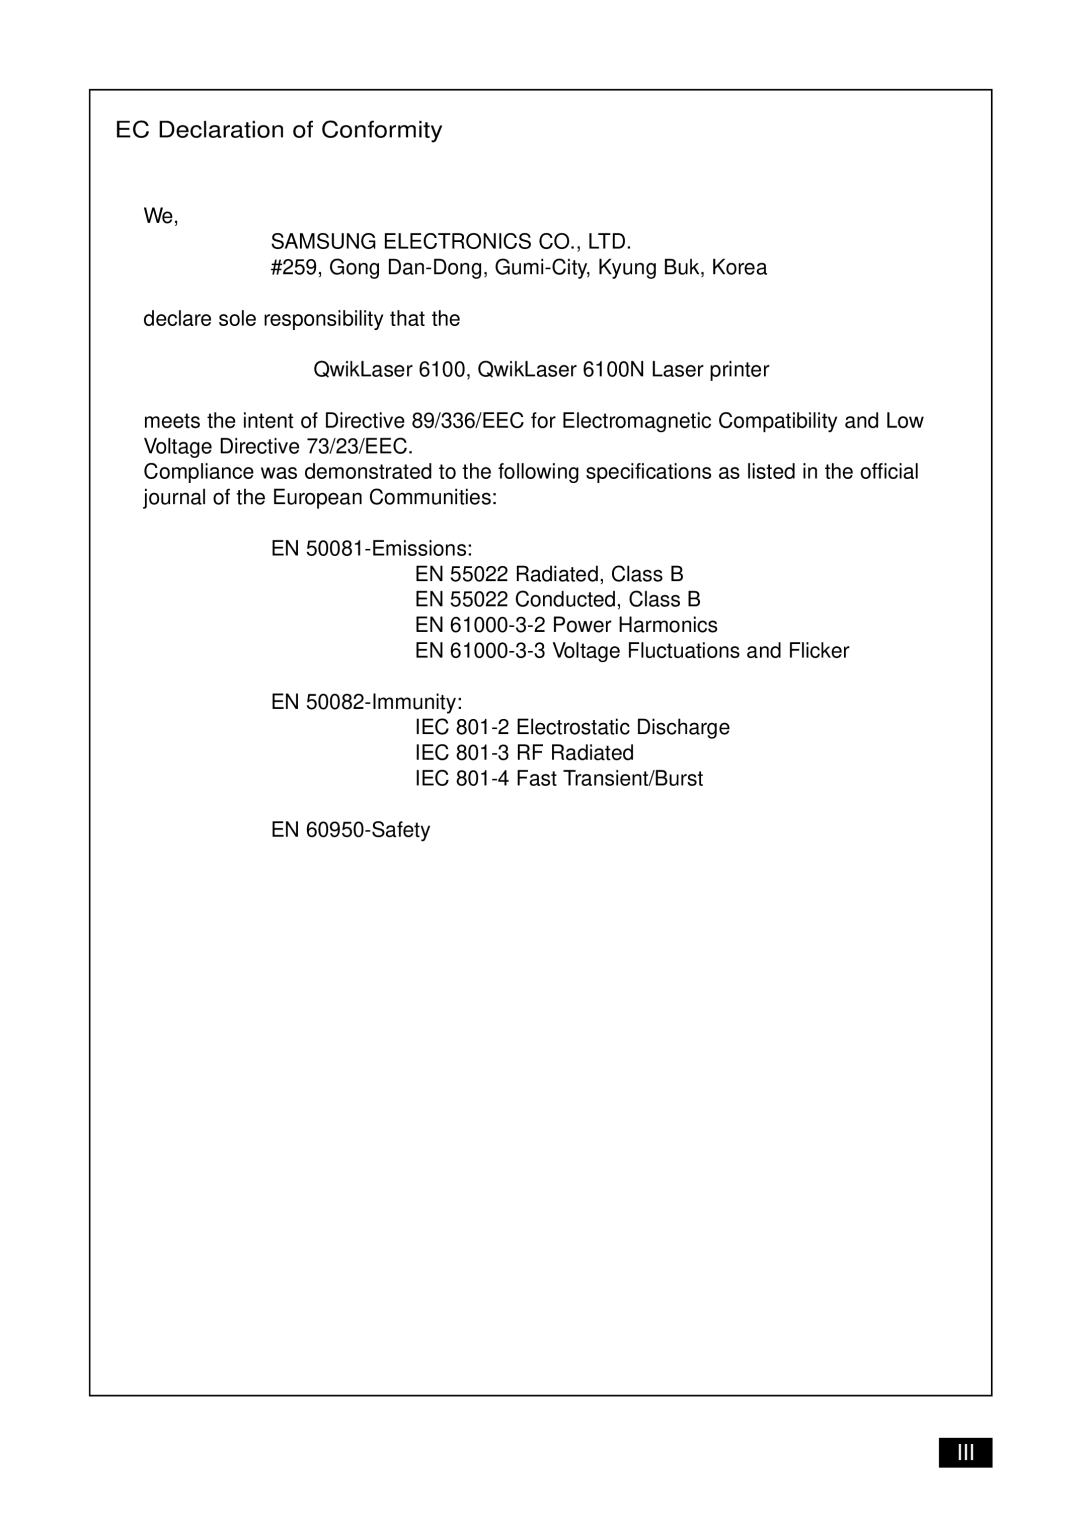 Samsung 6100N manual EC Declaration of Conformity 